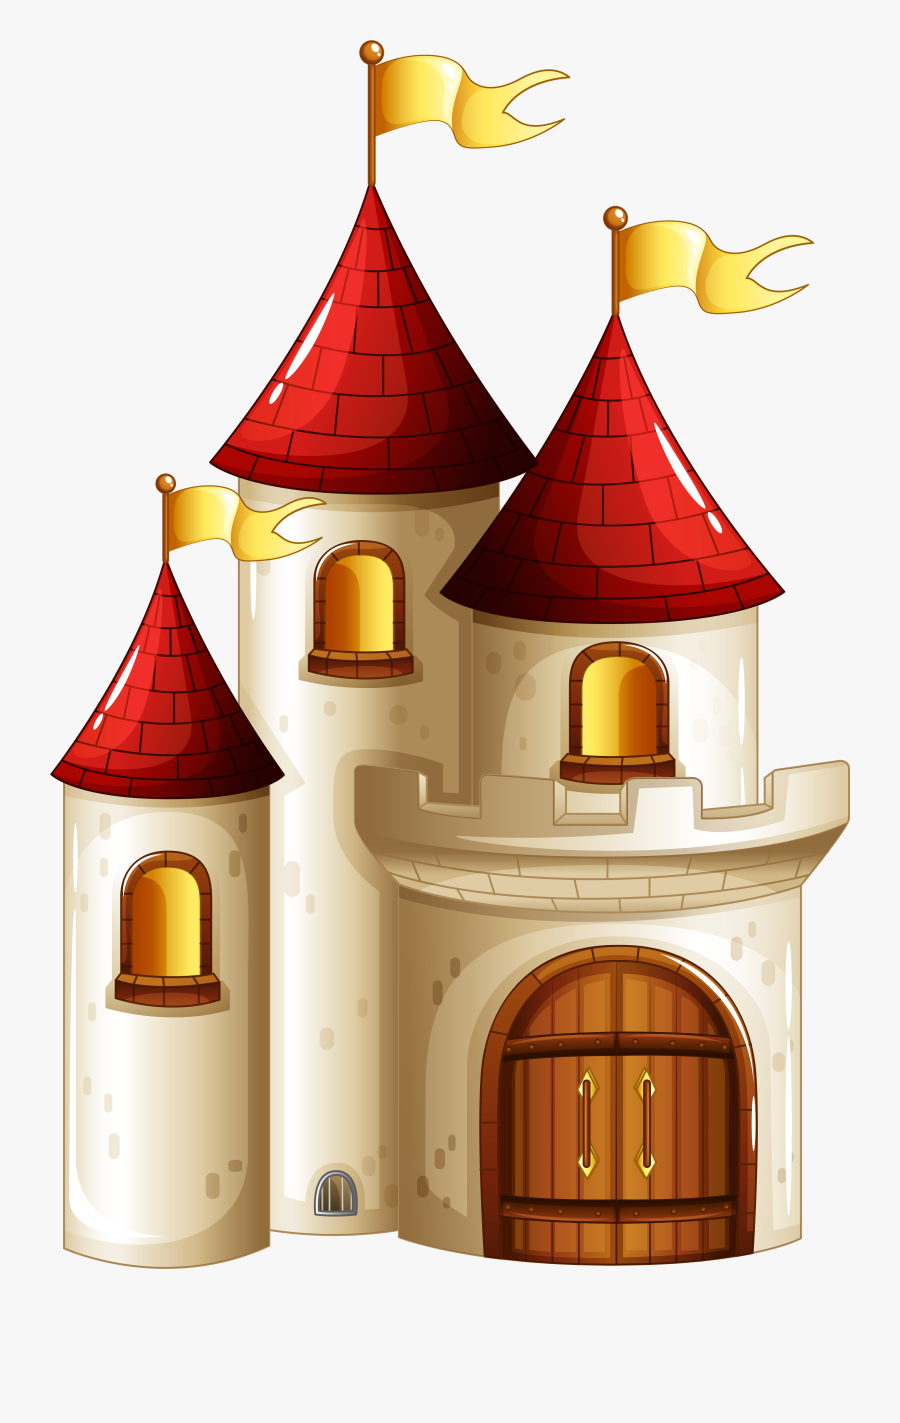 Transparent Castle Clipart - Fairy Tale Background Clipart, Transparent Clipart